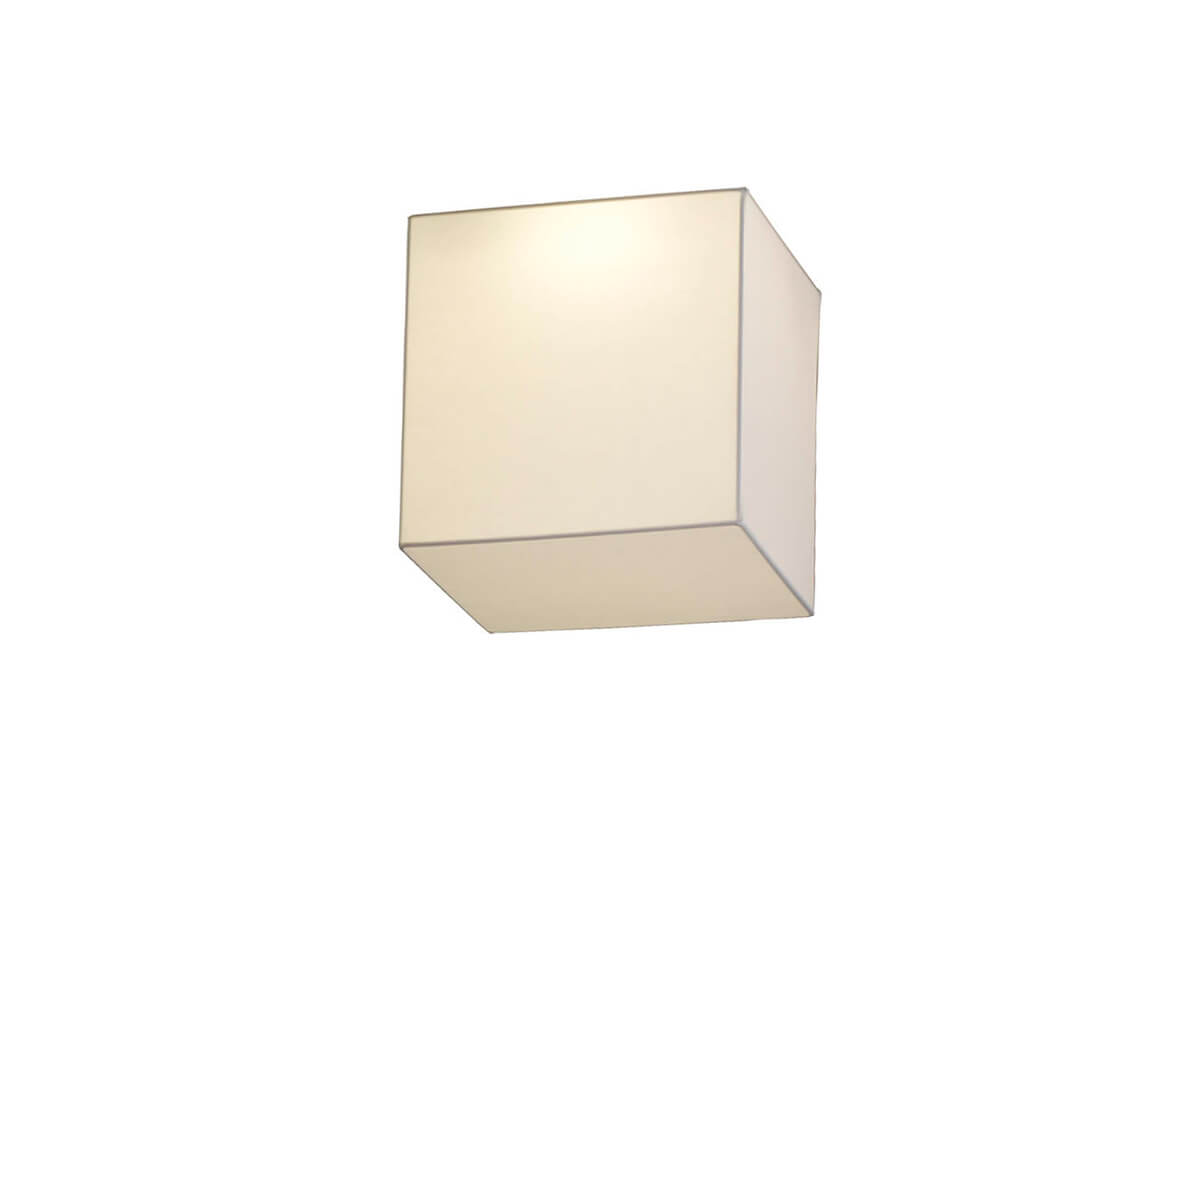 BLOCK - Ceiling lamp 30 cm